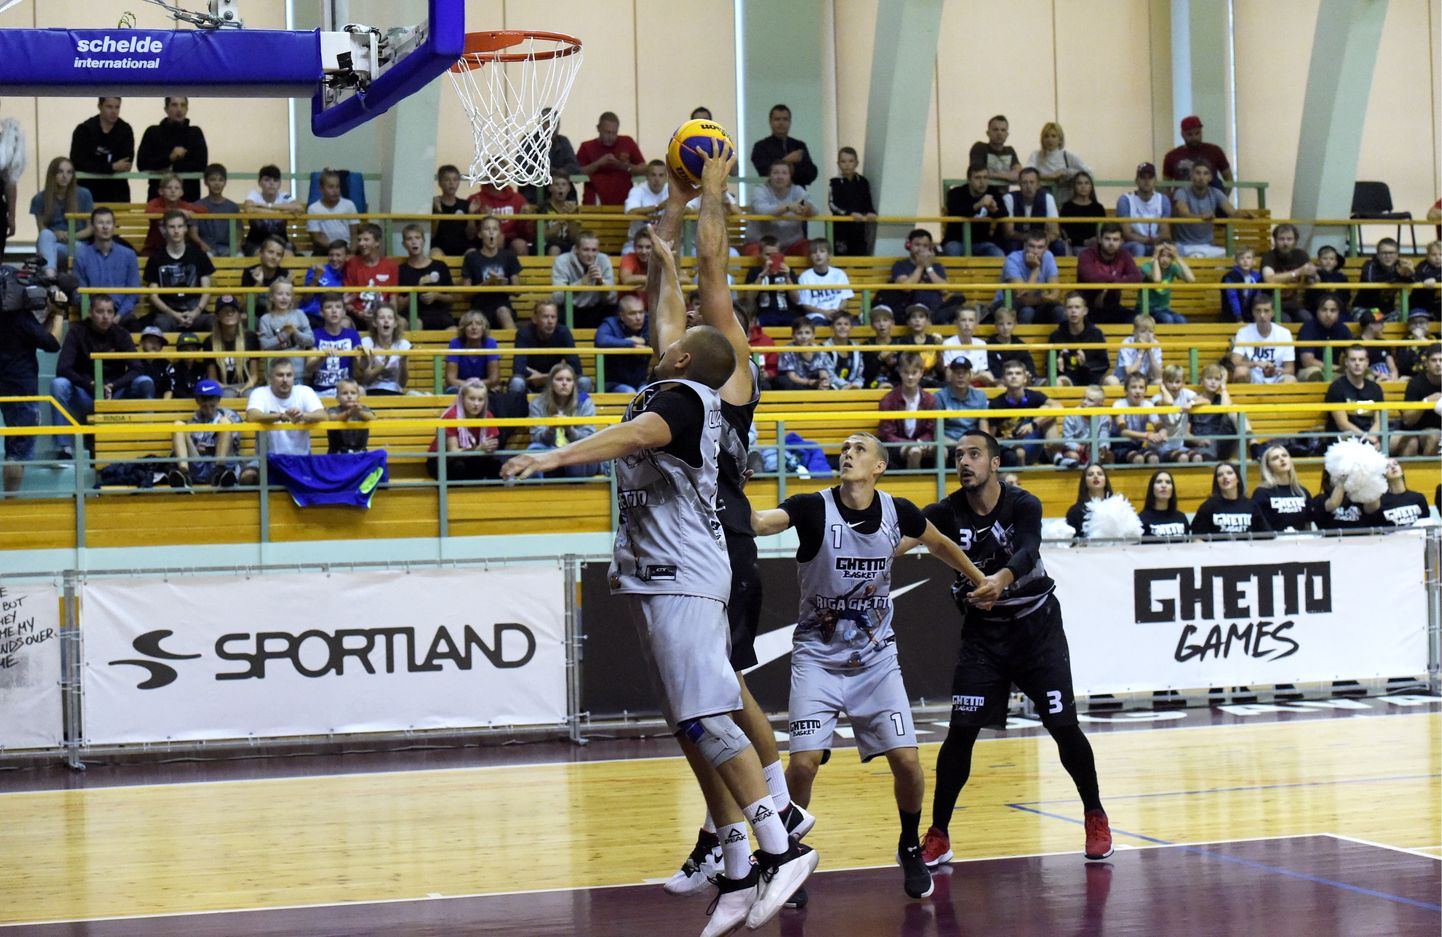 3x3 basketbola turnīra "Ghetto Basket Riga Challenger" ceturtdaļfināla spēle sporta namā "Daugava", kurā tiekas "Riga Ghetto" un "Zemun" komandas.